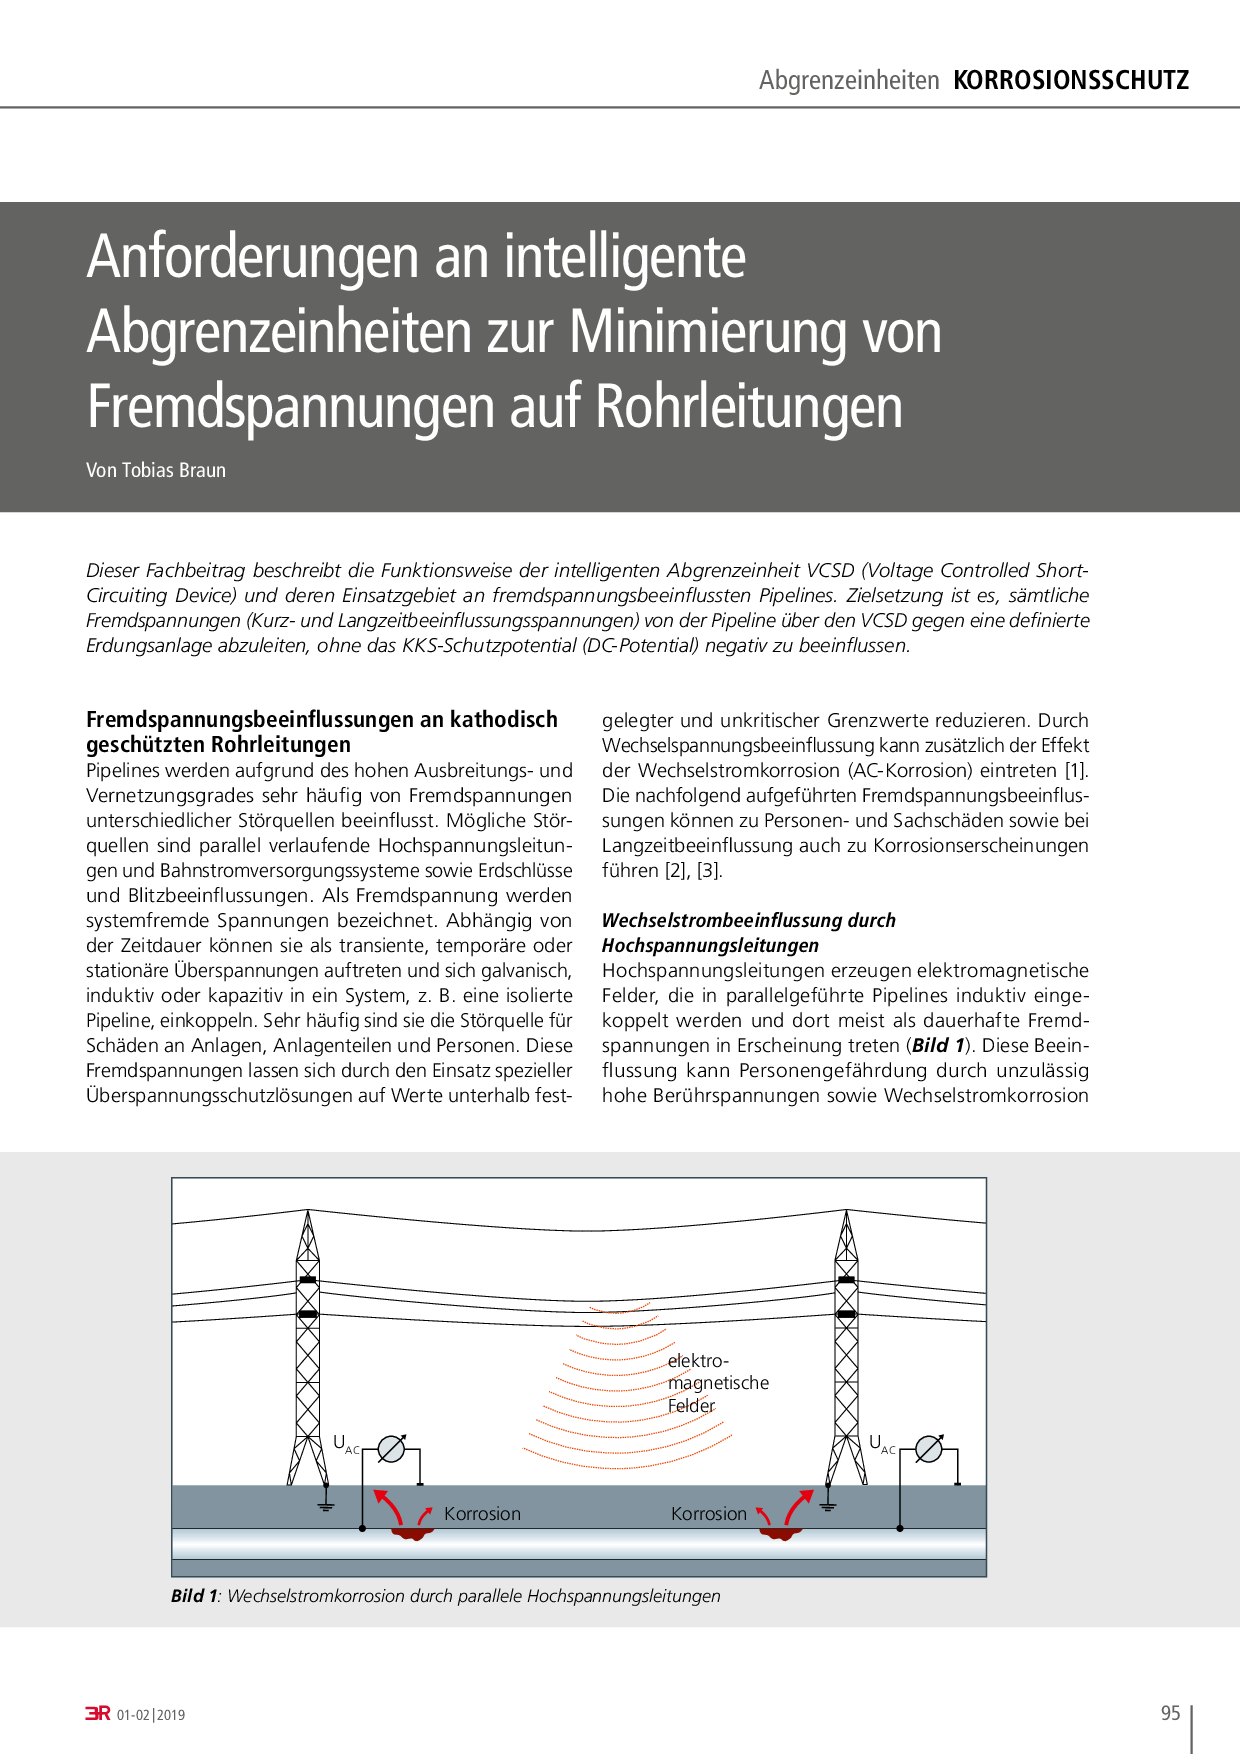 Anforderungen an intelligente Abgrenzeinheiten zur Minimierung von Fremdspannungen auf Rohrleitungen